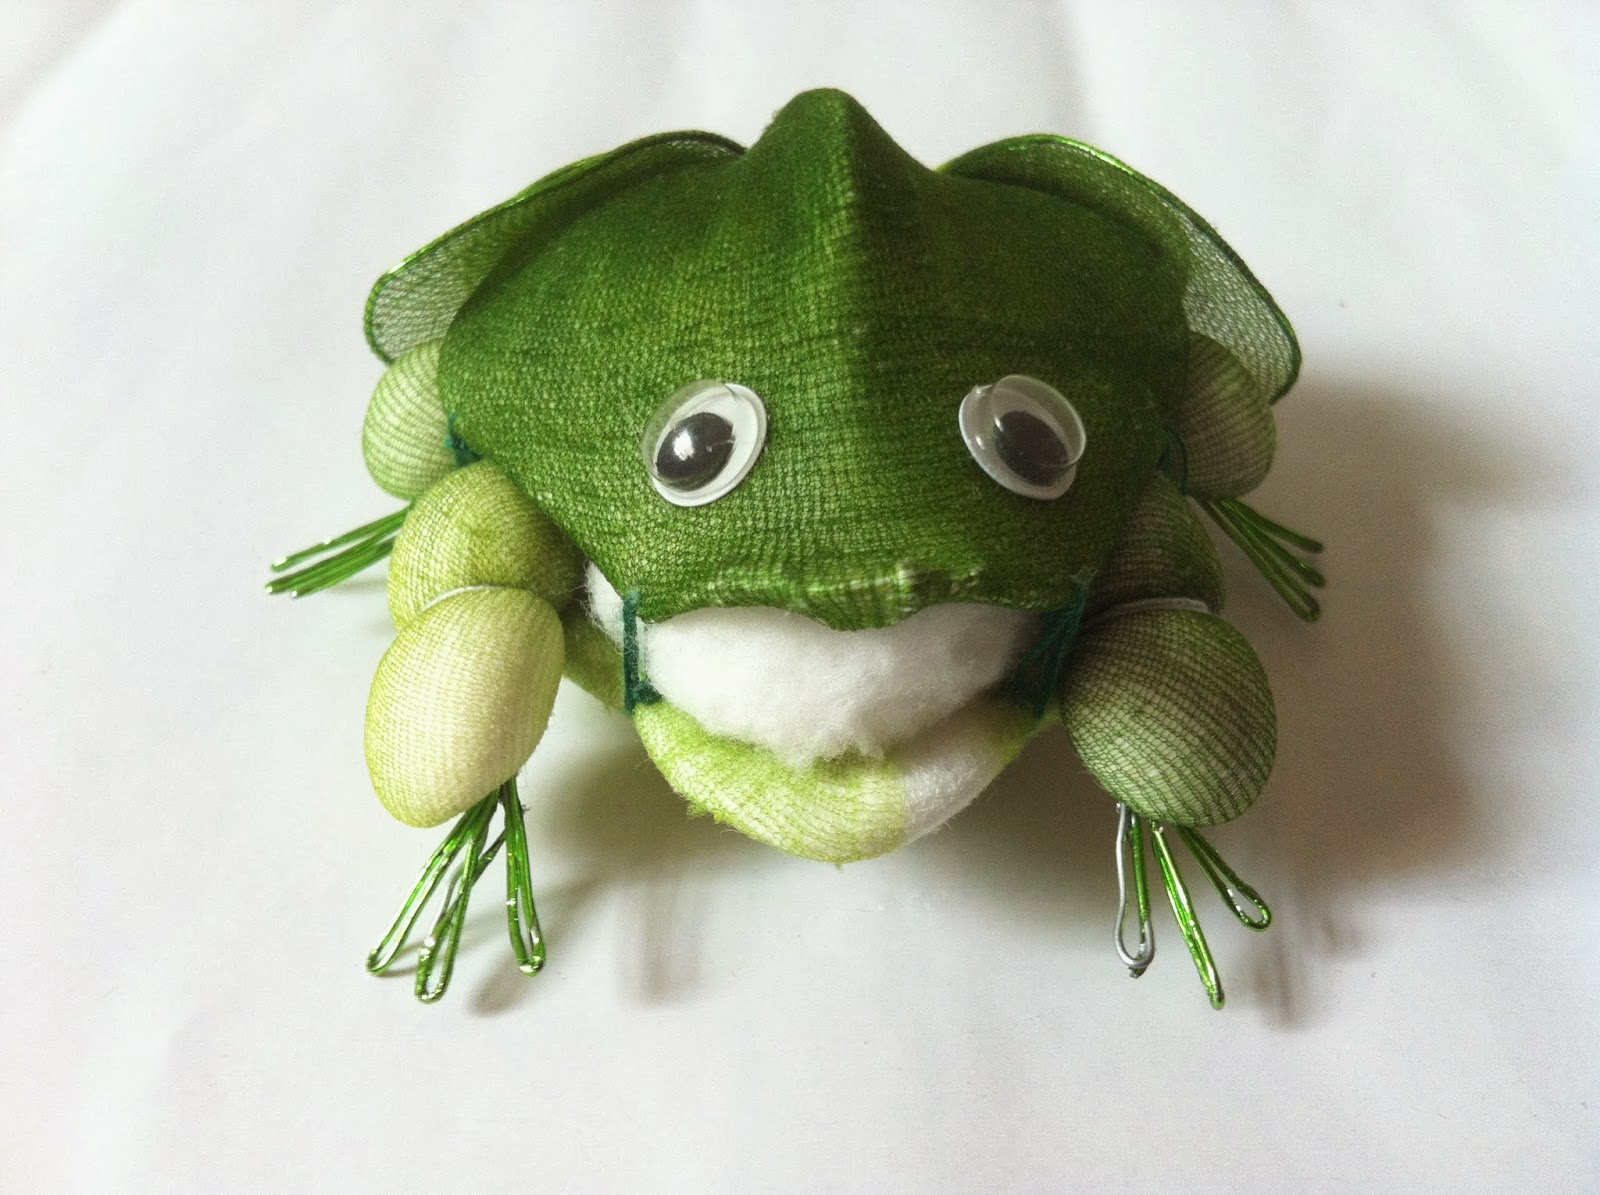 Handmade Stocking Flowers - Singapore: Handmade Art and Craft Green Frog